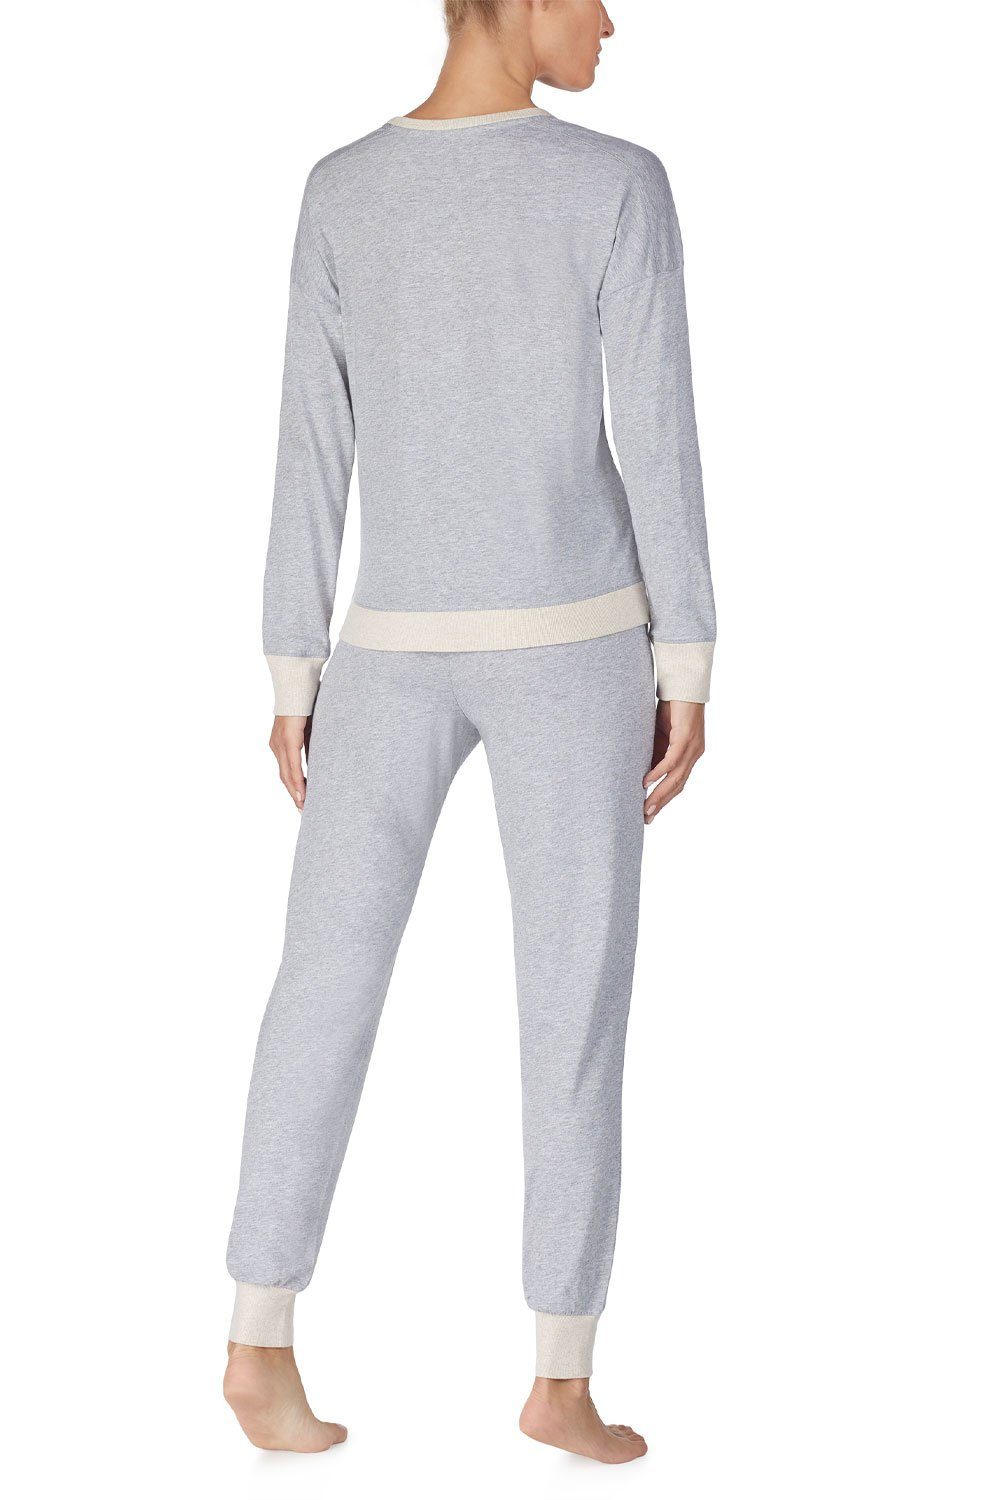 Pyjama Top & Jogger DKNY Set YI2919259 grey